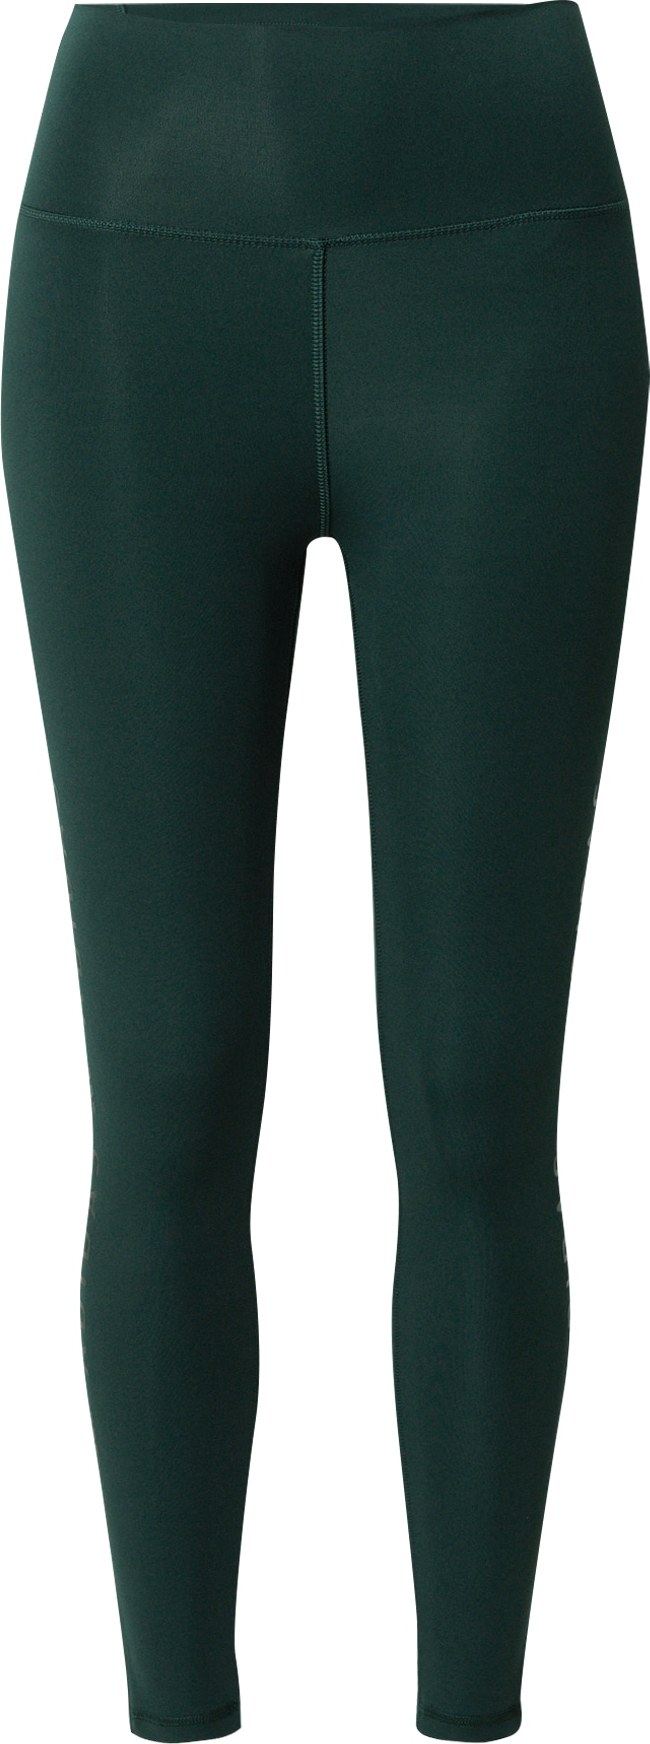 ADIDAS PERFORMANCE Sportovní kalhoty tmavě zelená / černá